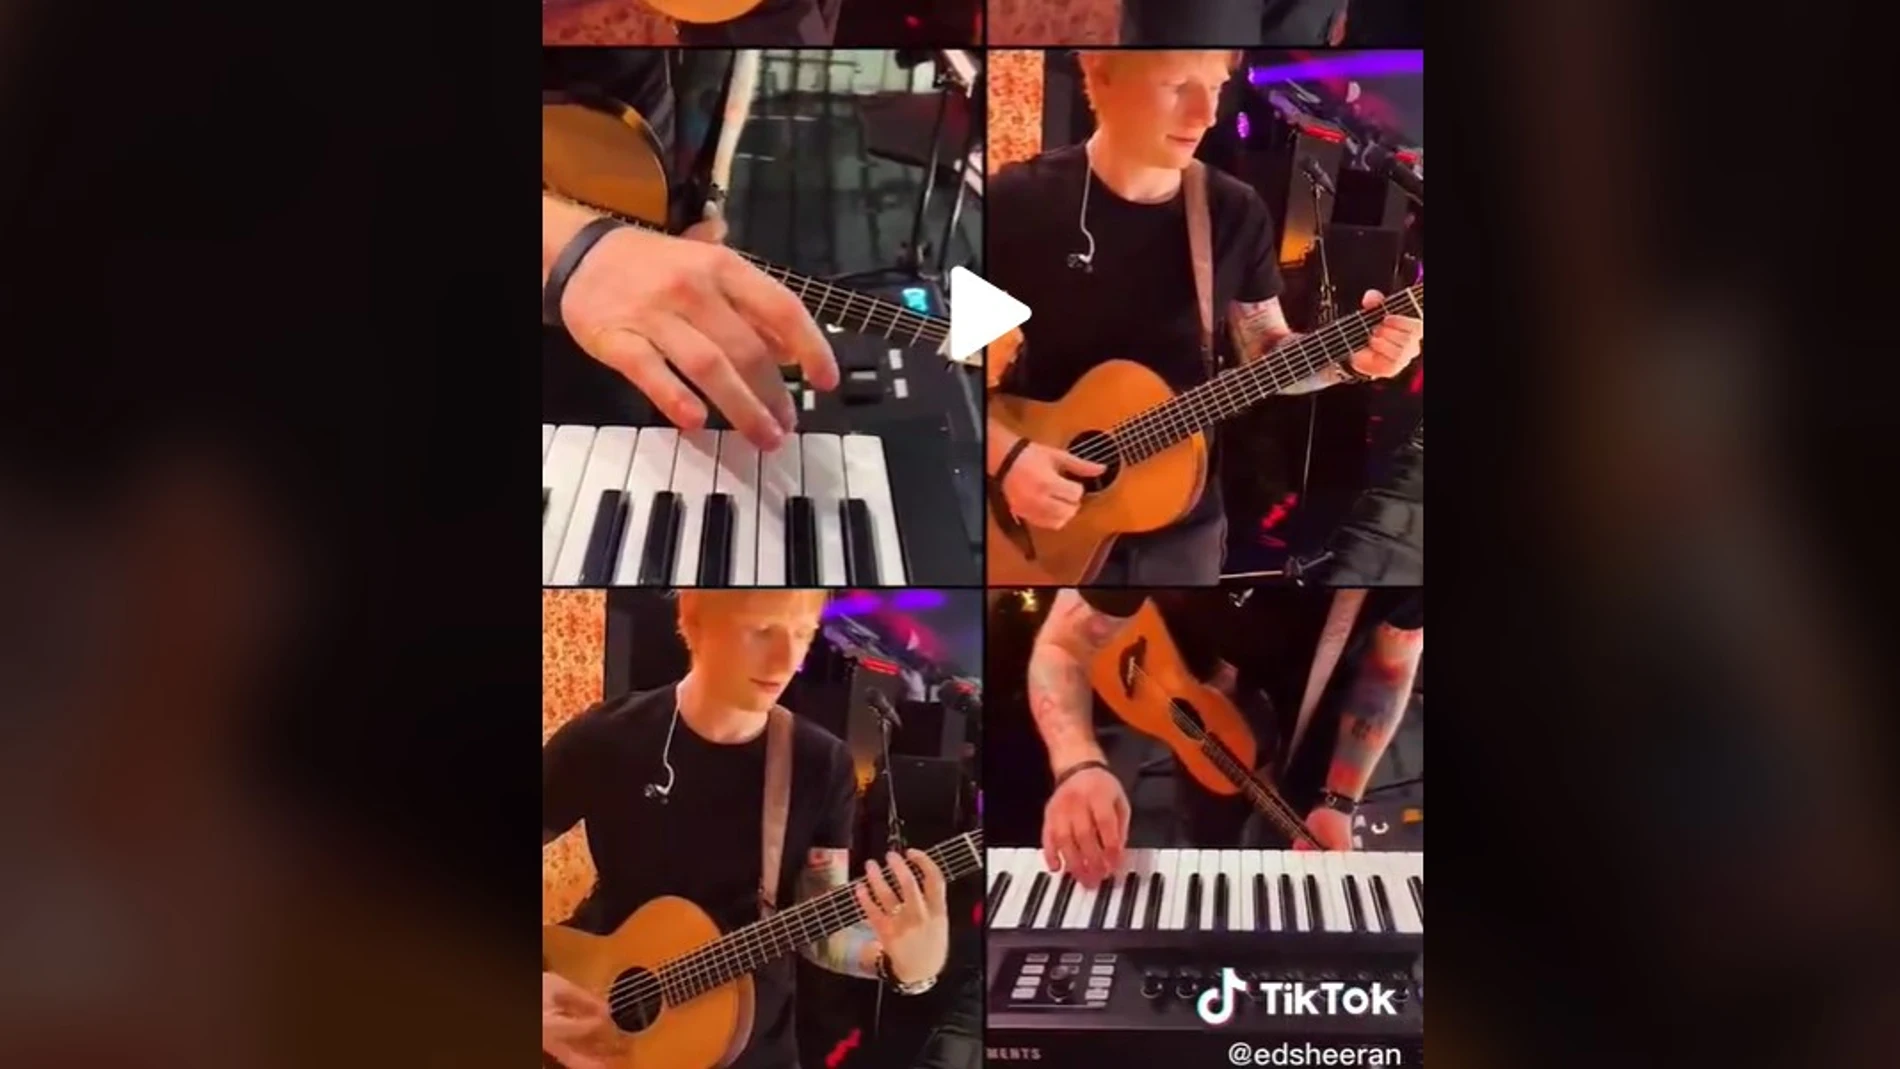 Visto así tocar 'Bad Habits' no es difícil: Ed Sheeran da las seis claves en un vídeo de TikTok